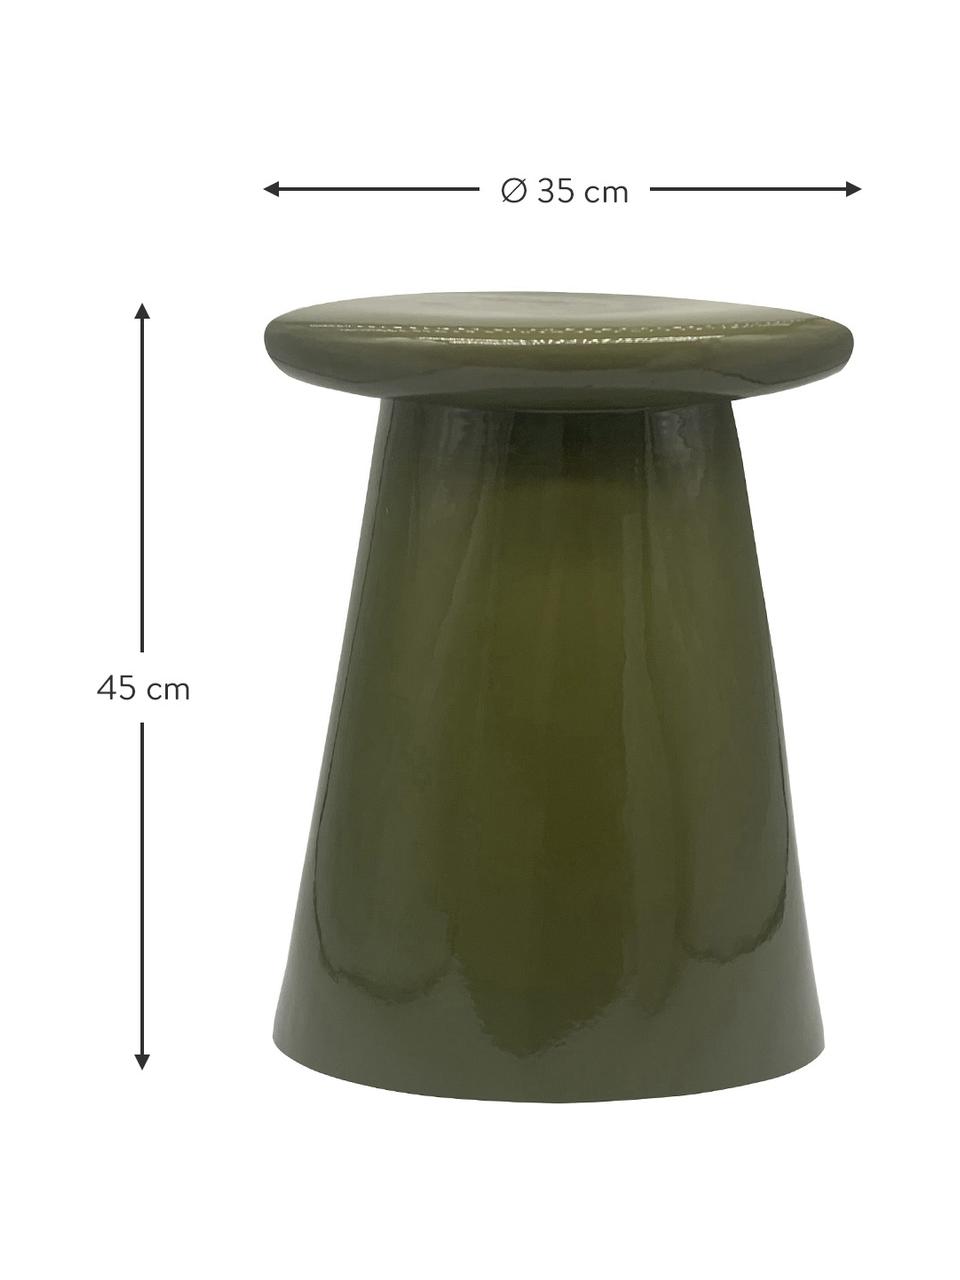 Handgefertigter Beistelltisch Button aus Keramik in Grün, Keramik, Grün, Ø 35 x H 45 cm